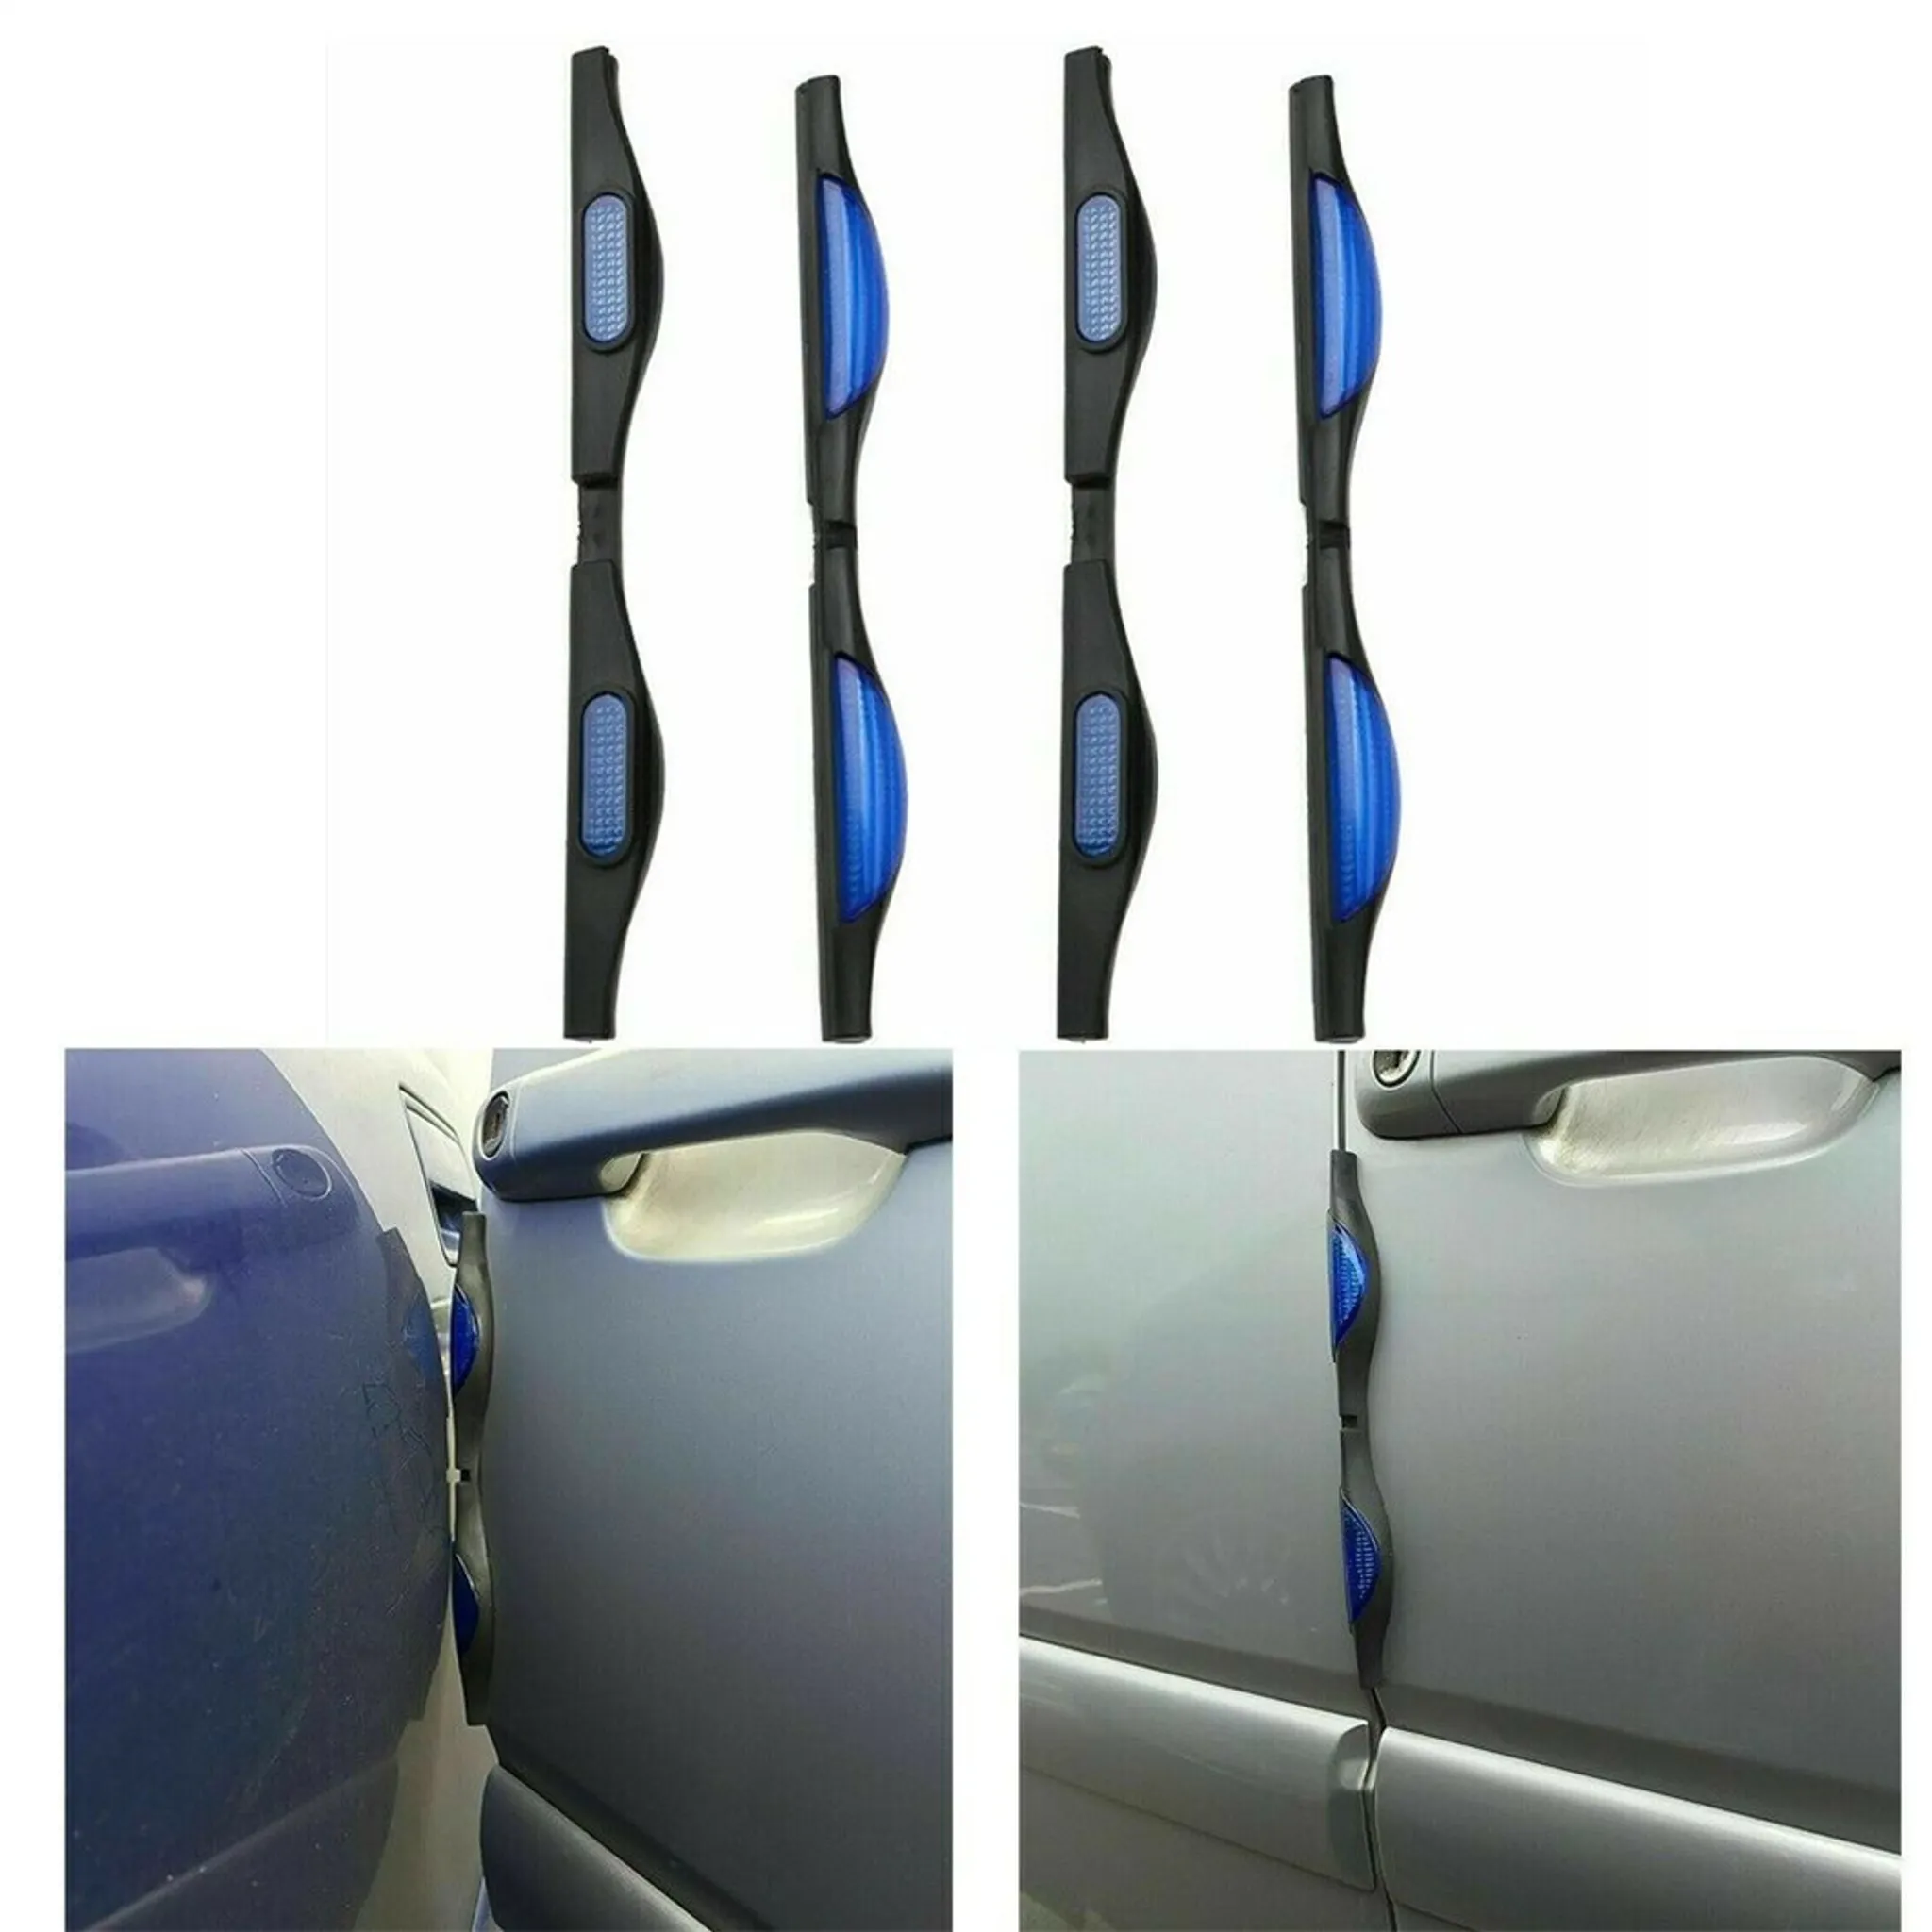 Stoßfänger und Kantenschutz für Autotüren mit Reflektor 4 Stück in Rot